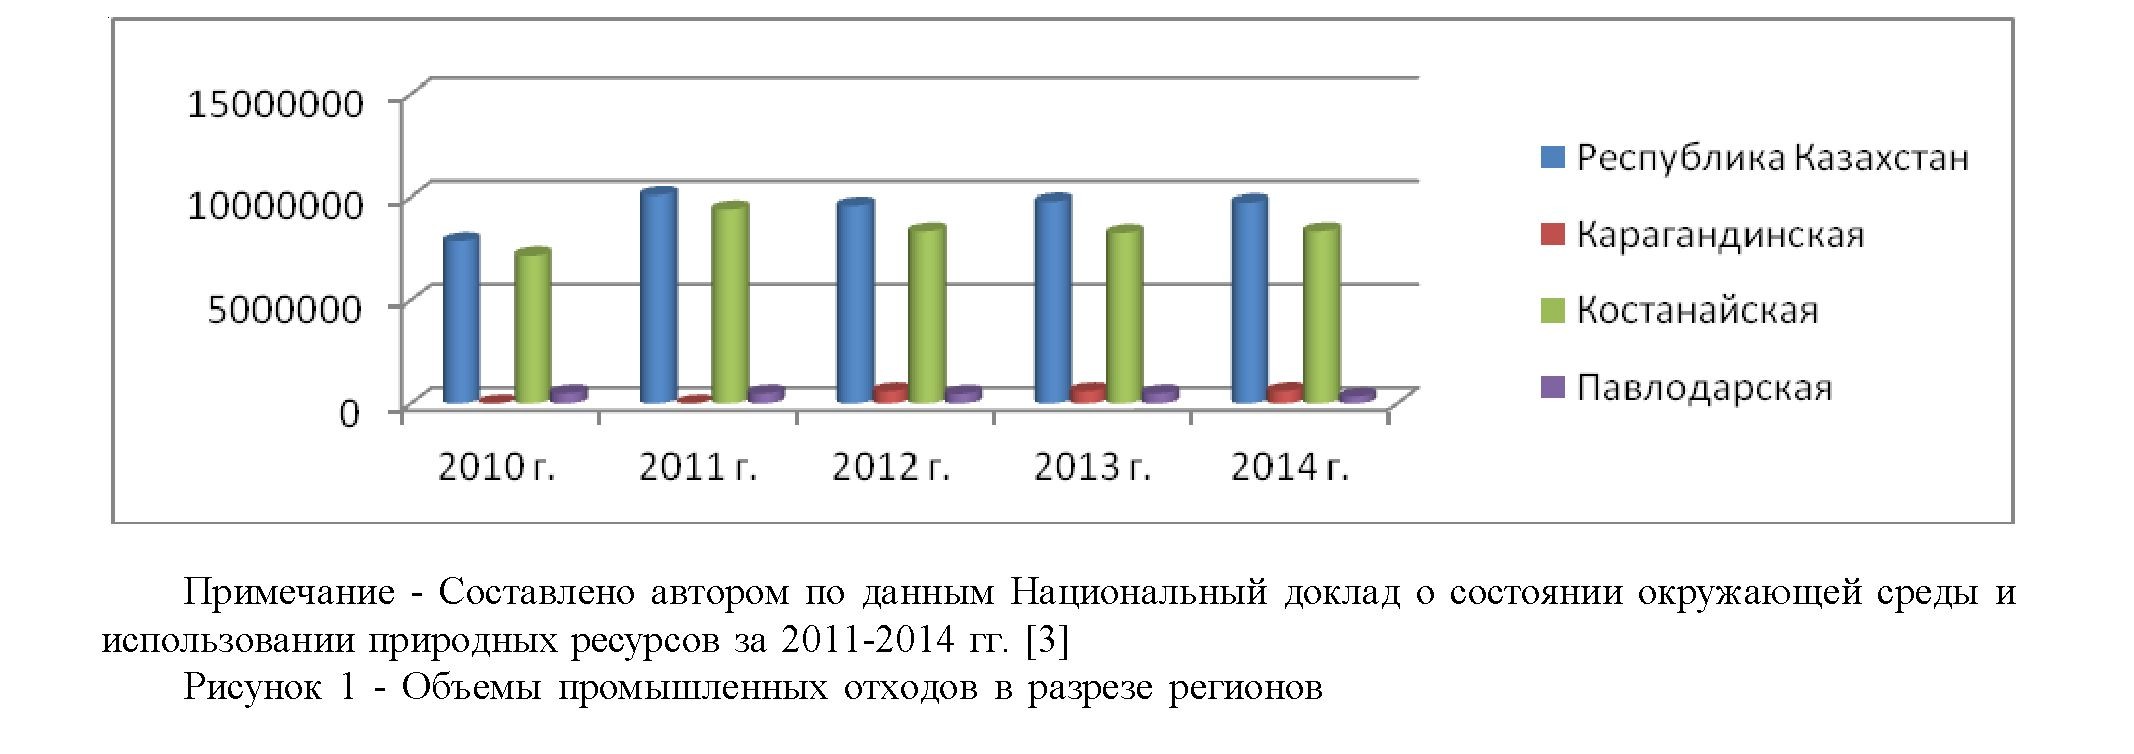 Анализ состояния промышленных и бытовых отходов в республике Казахстан